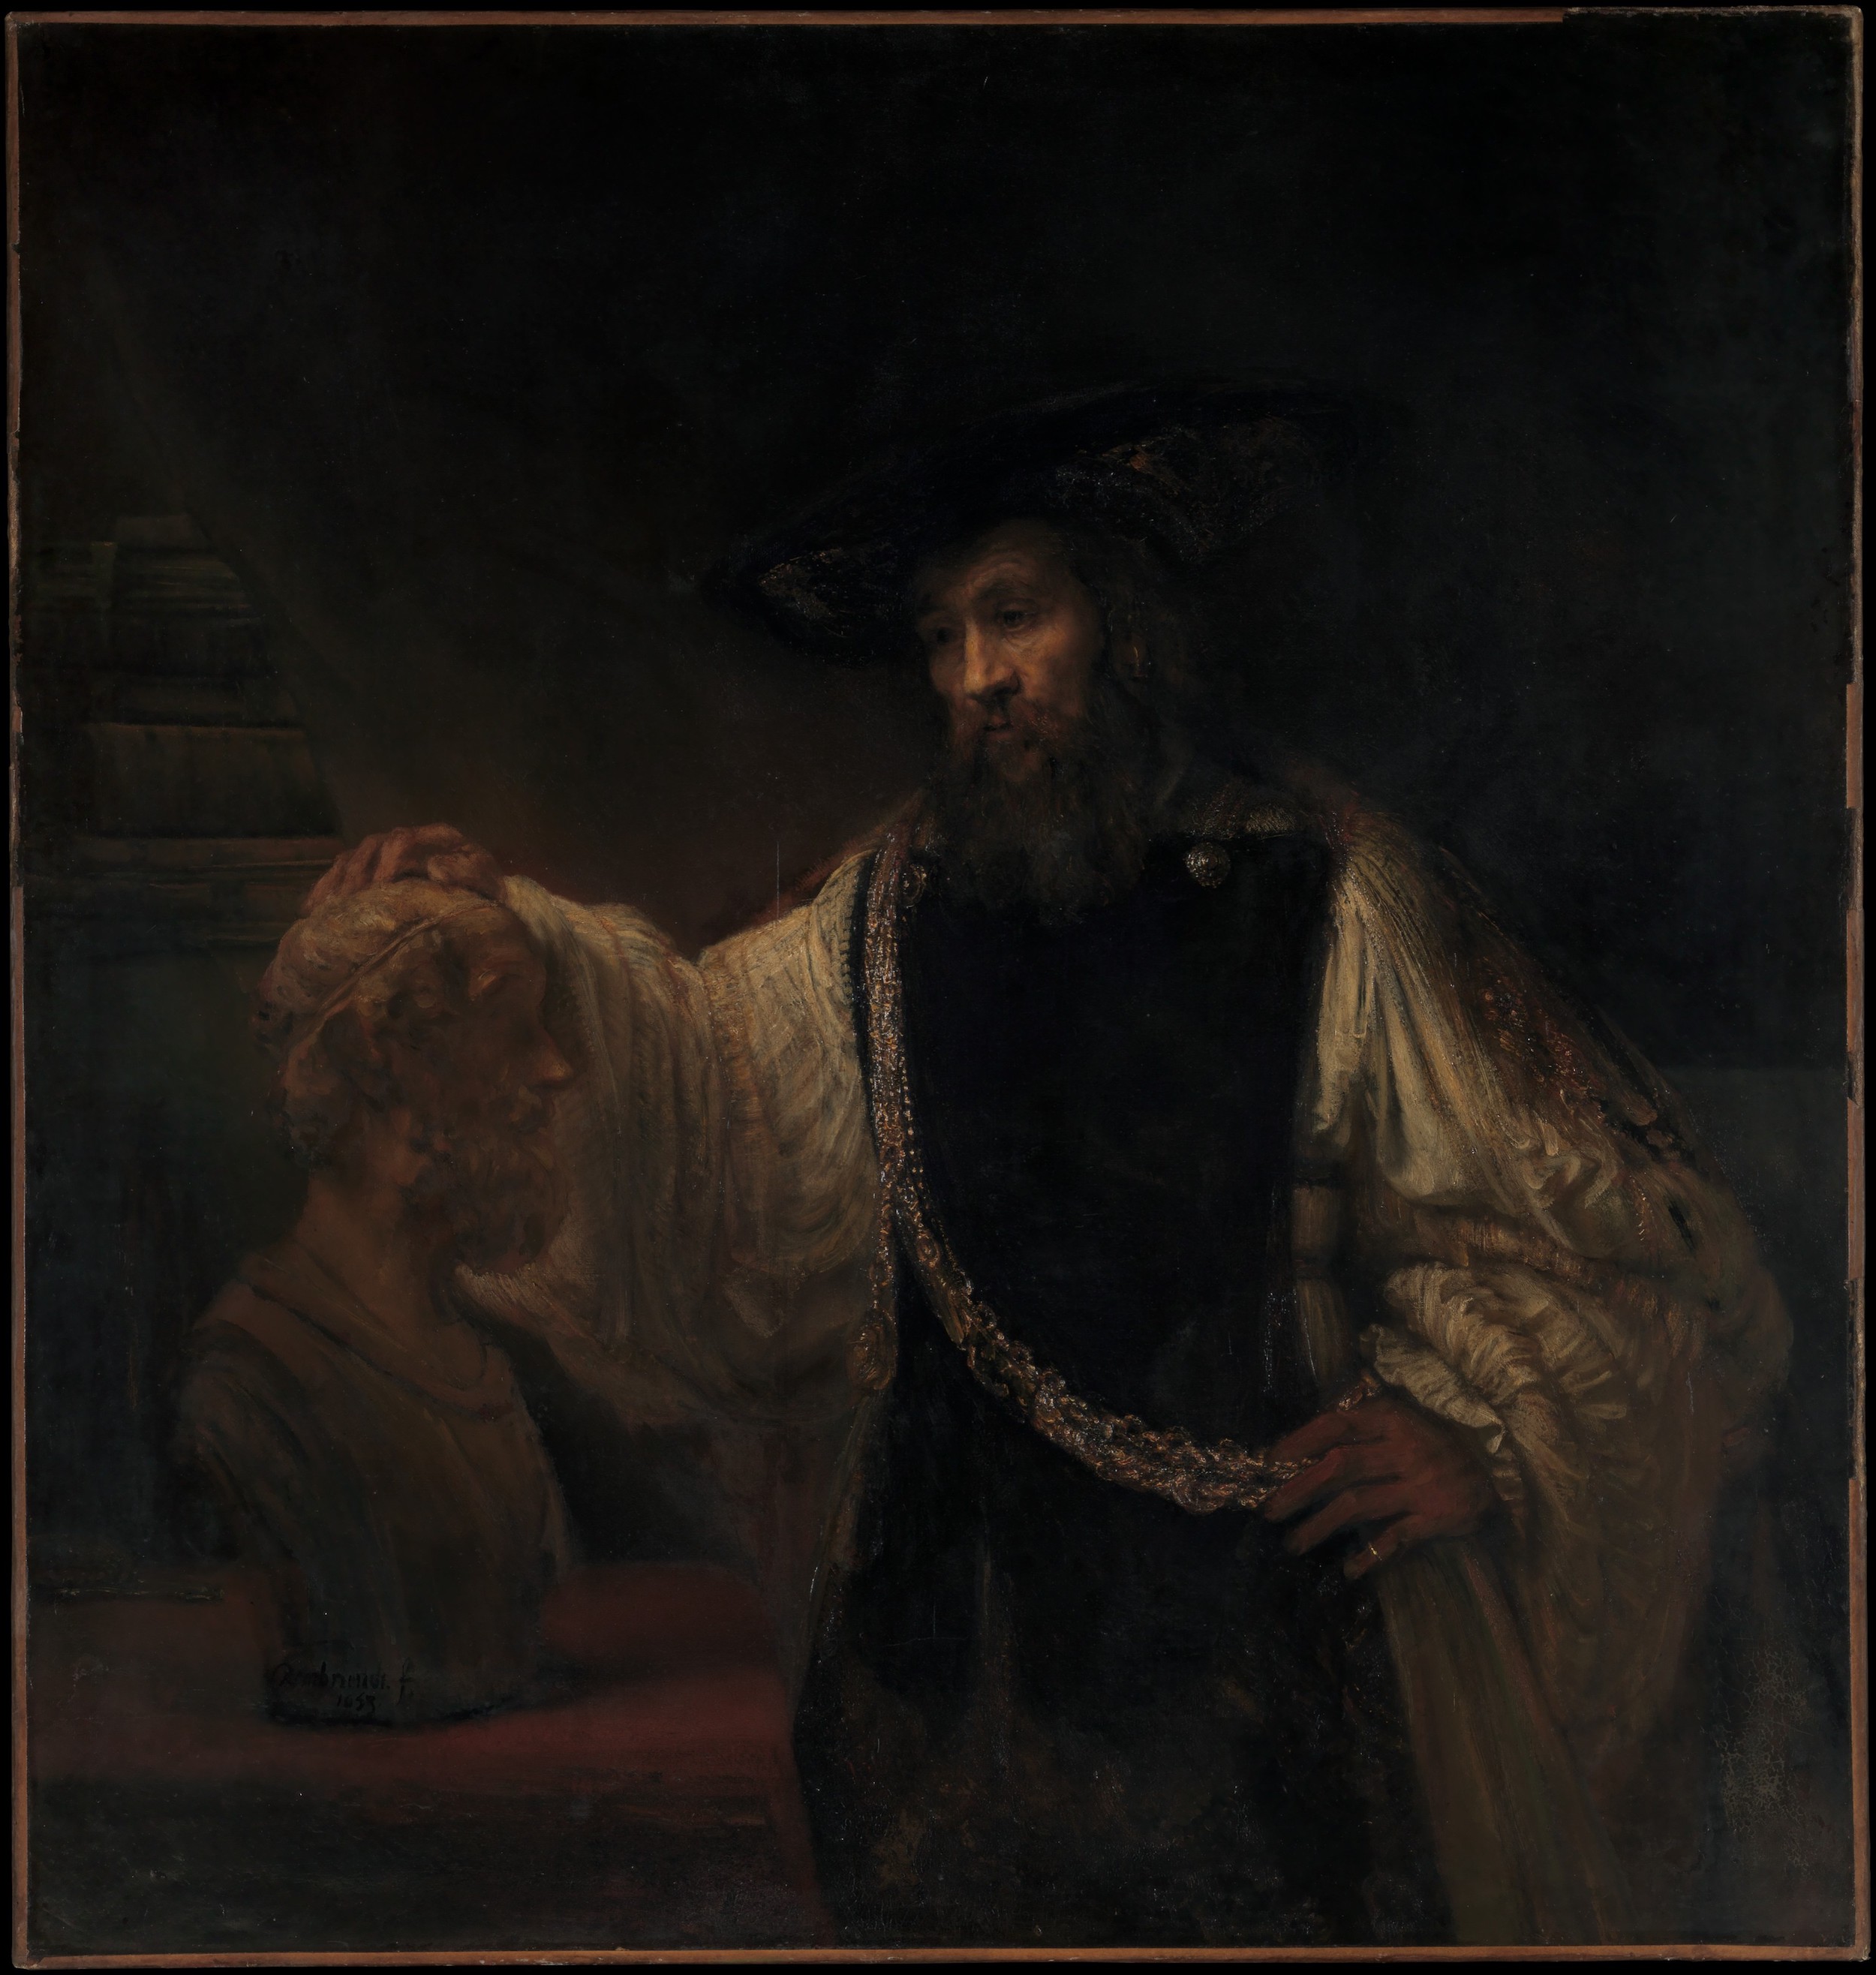 亚里士多德与荷马半身像 by 伦勃朗· 范·莱因 - 1653 